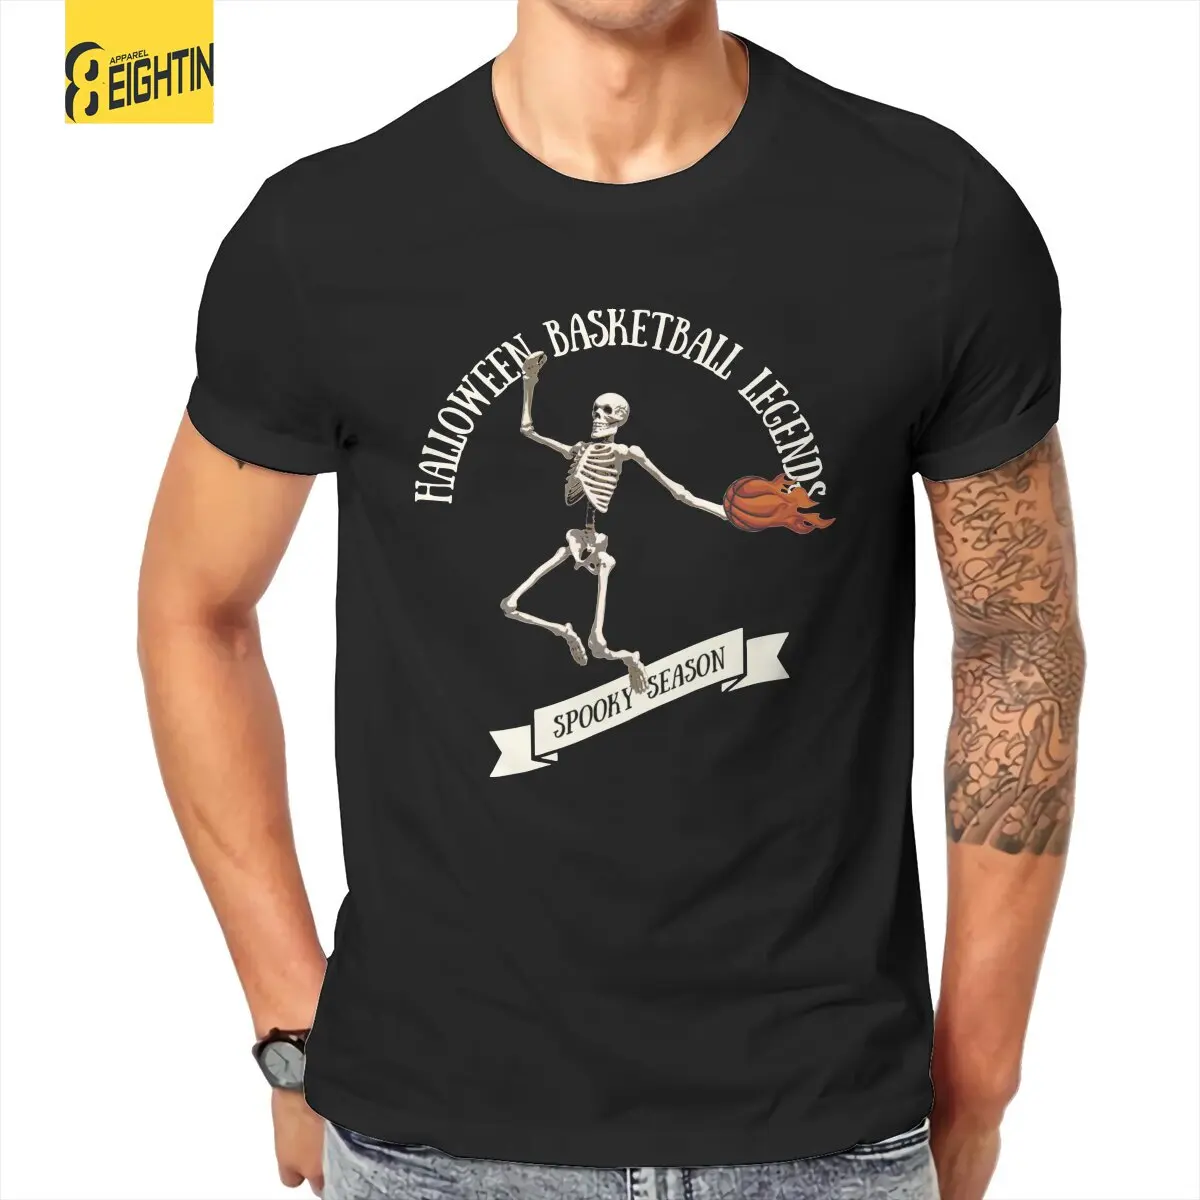 

Мужская футболка со скелетом, баскетбольным черепом, Забавные футболки для Хэллоуина, баскетбольных легенд, футболка с коротким рукавом, 100% хлопок, Яркие топы